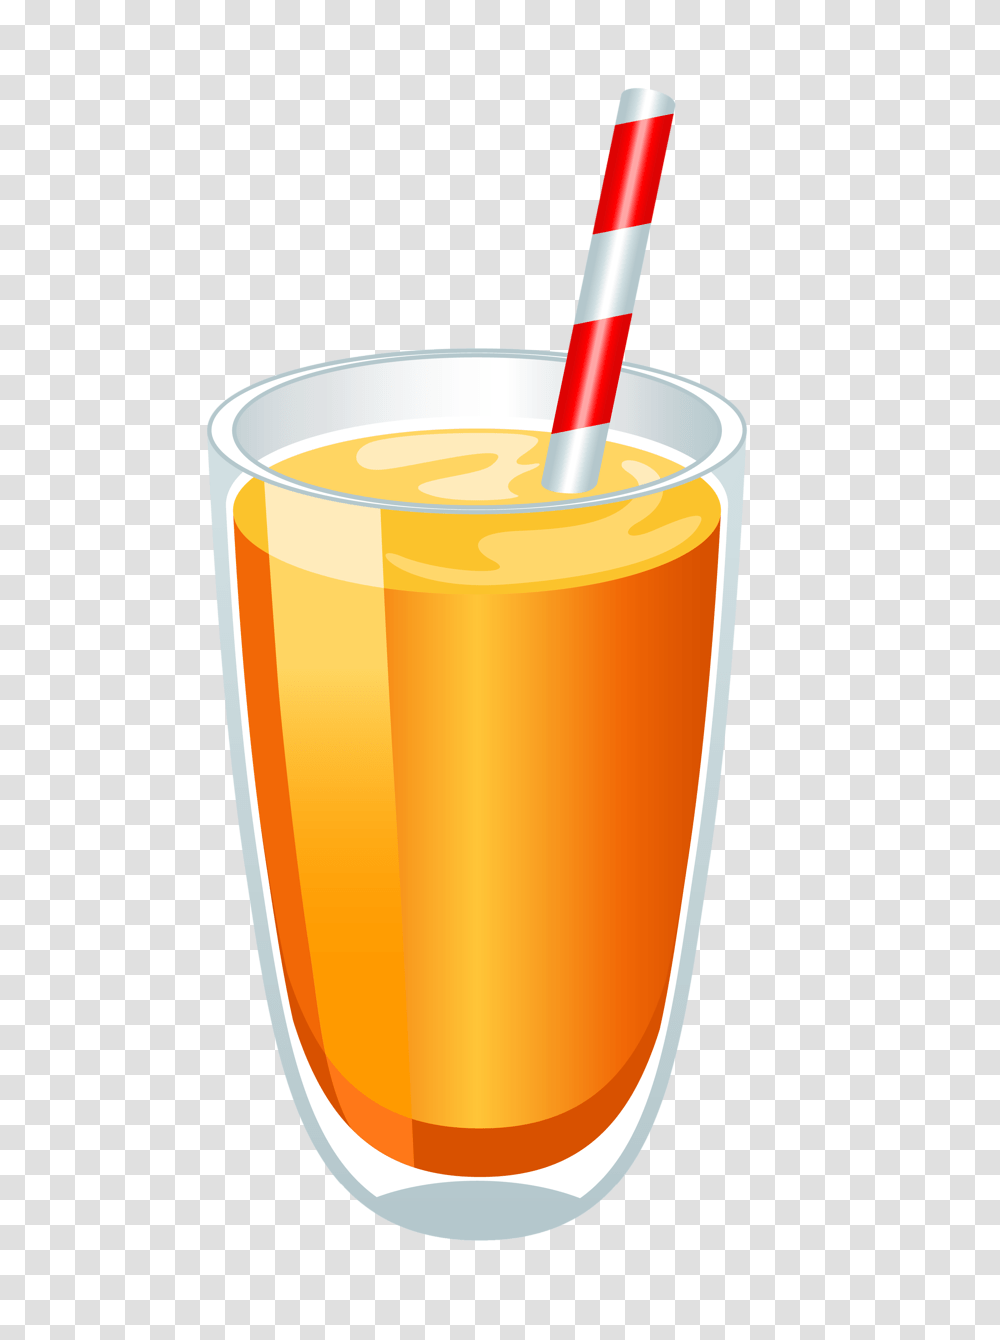 Food Clip Art Food Clips Clip Art And Food, Juice, Beverage, Drink, Orange Juice Transparent Png